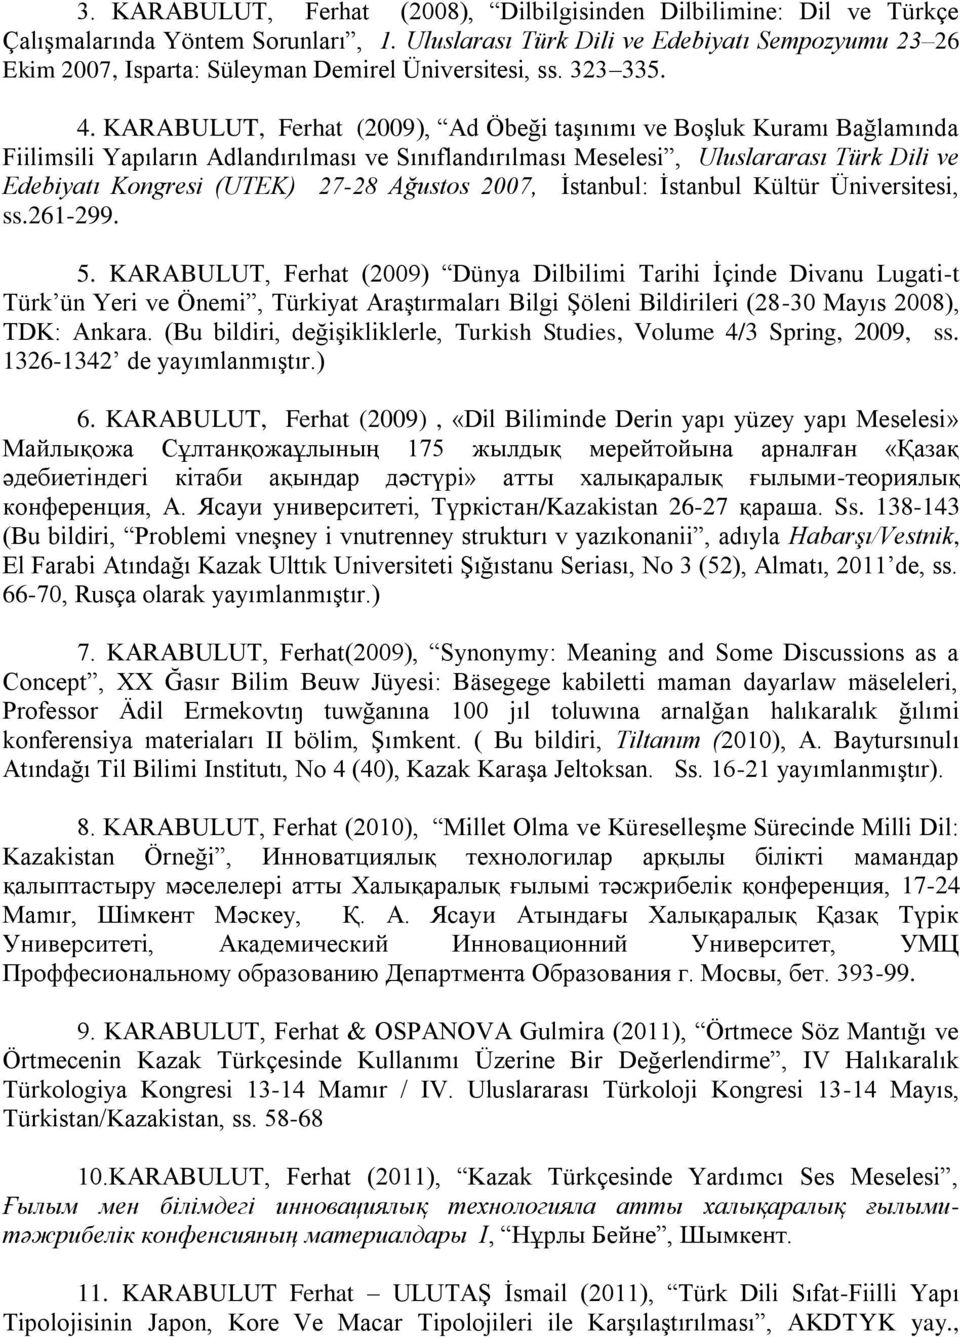 KARABULUT, Ferhat (2009), Ad Öbeği taşınımı ve Boşluk Kuramı Bağlamında Fiilimsili Yapıların Adlandırılması ve Sınıflandırılması Meselesi, Uluslararası Türk Dili ve Edebiyatı Kongresi (UTEK) 27-28